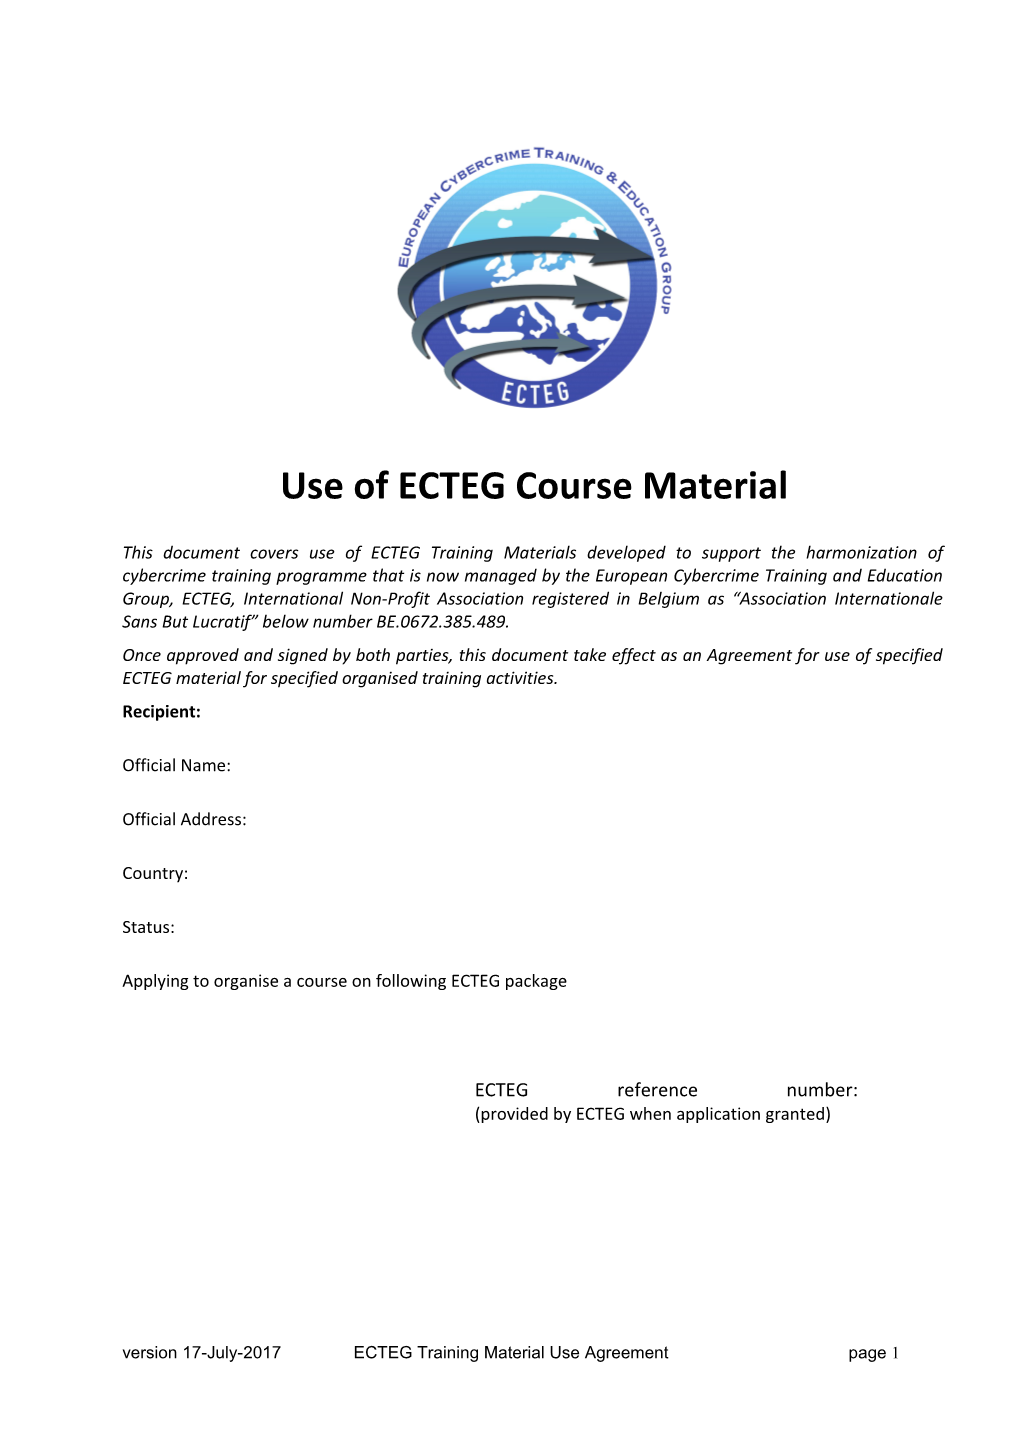 ECTEG Materials Application Form